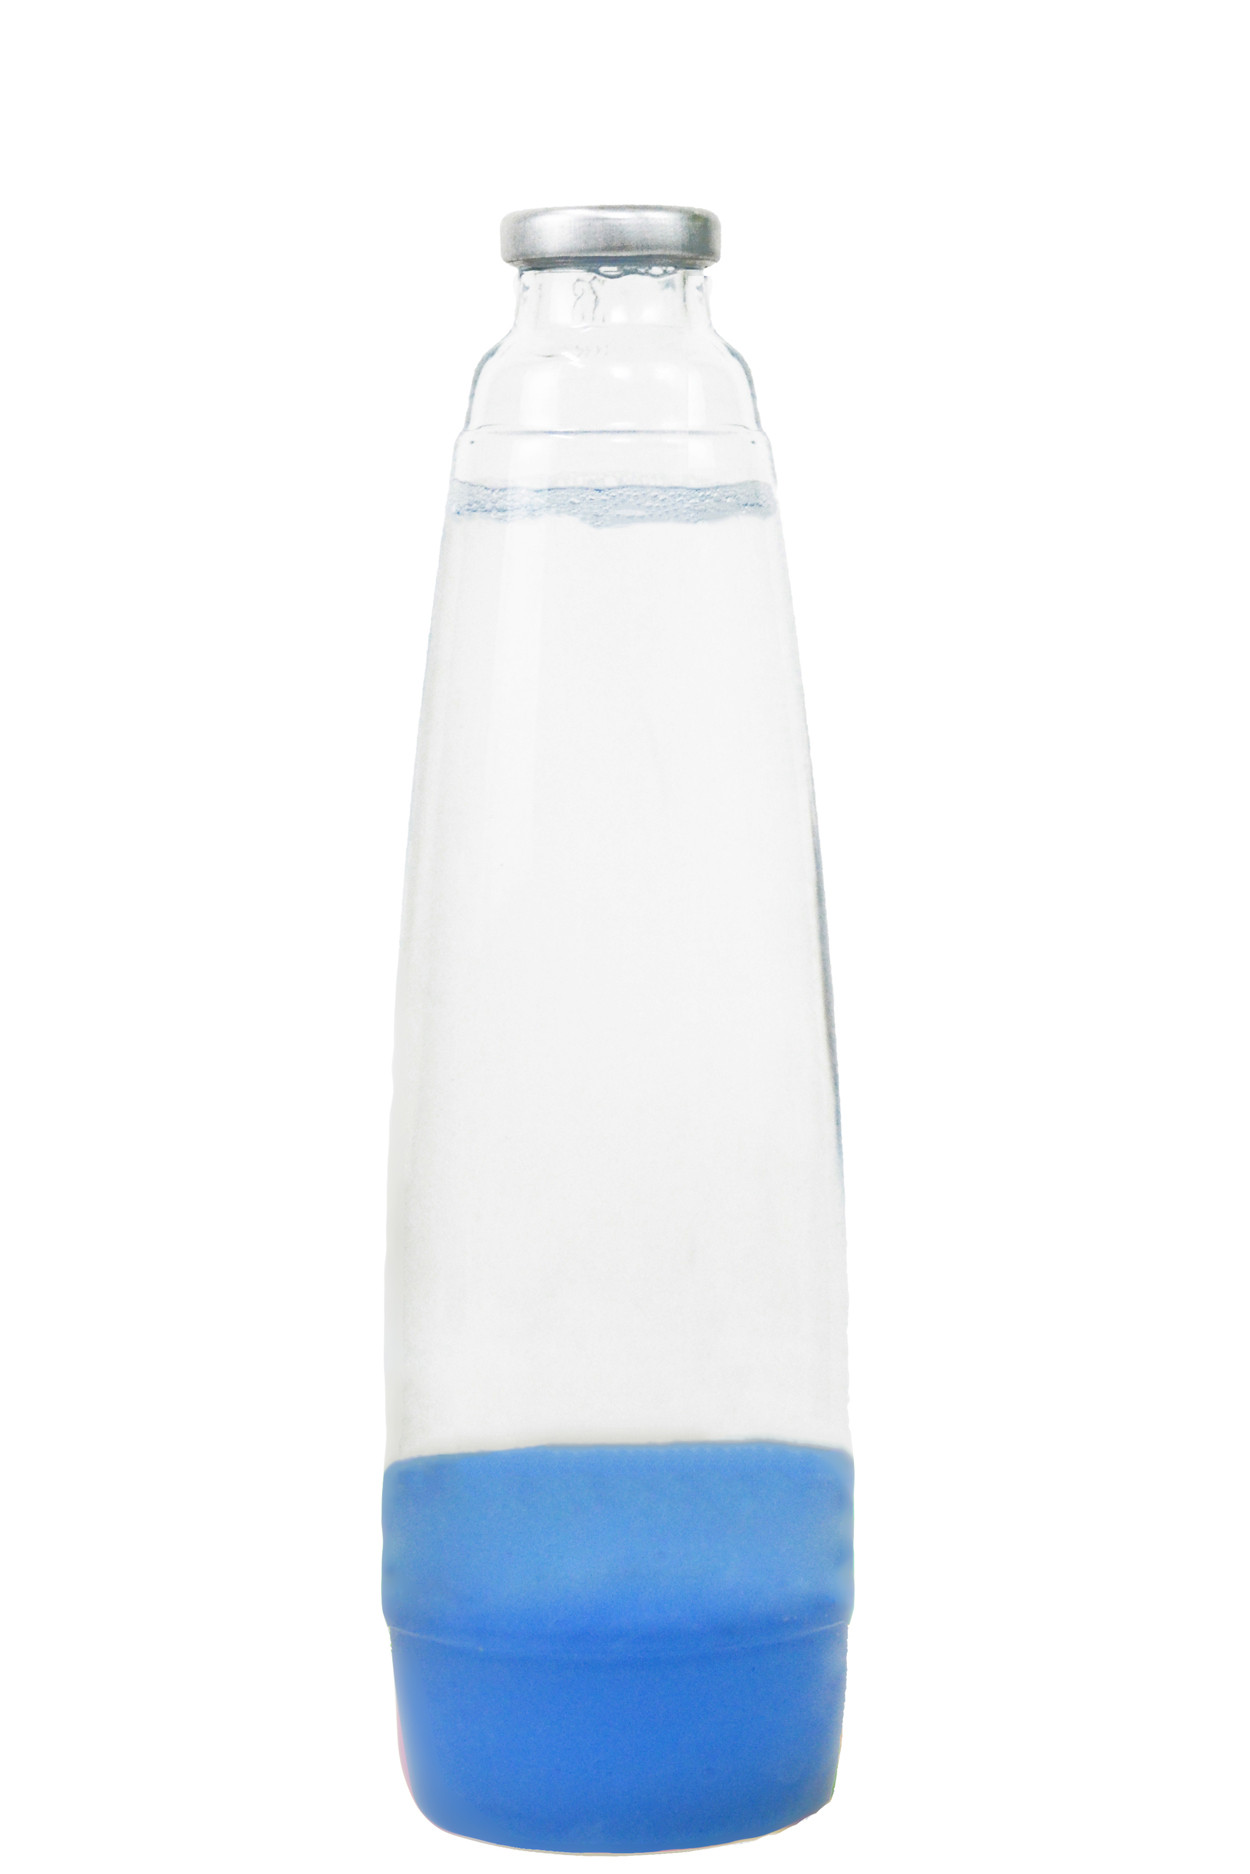 фото Колба для лава-лампы 35см синяя/прозрачная (20*5,5) motionlamps